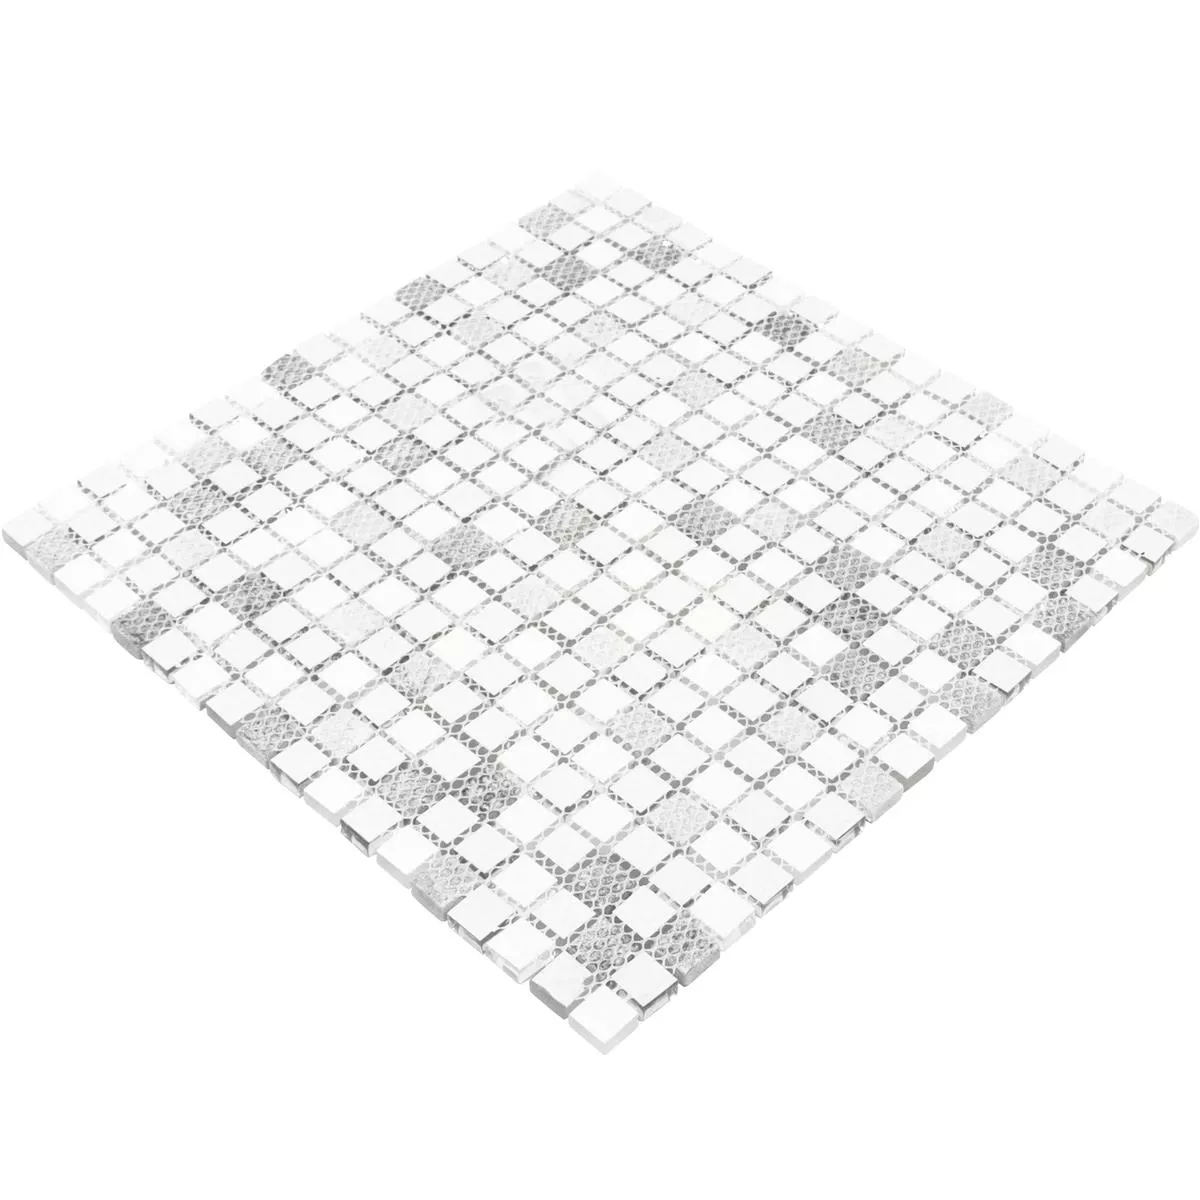 Mosaico Di Vetro Piastrelle Lexington Vetro Mix di Materiali Bianco